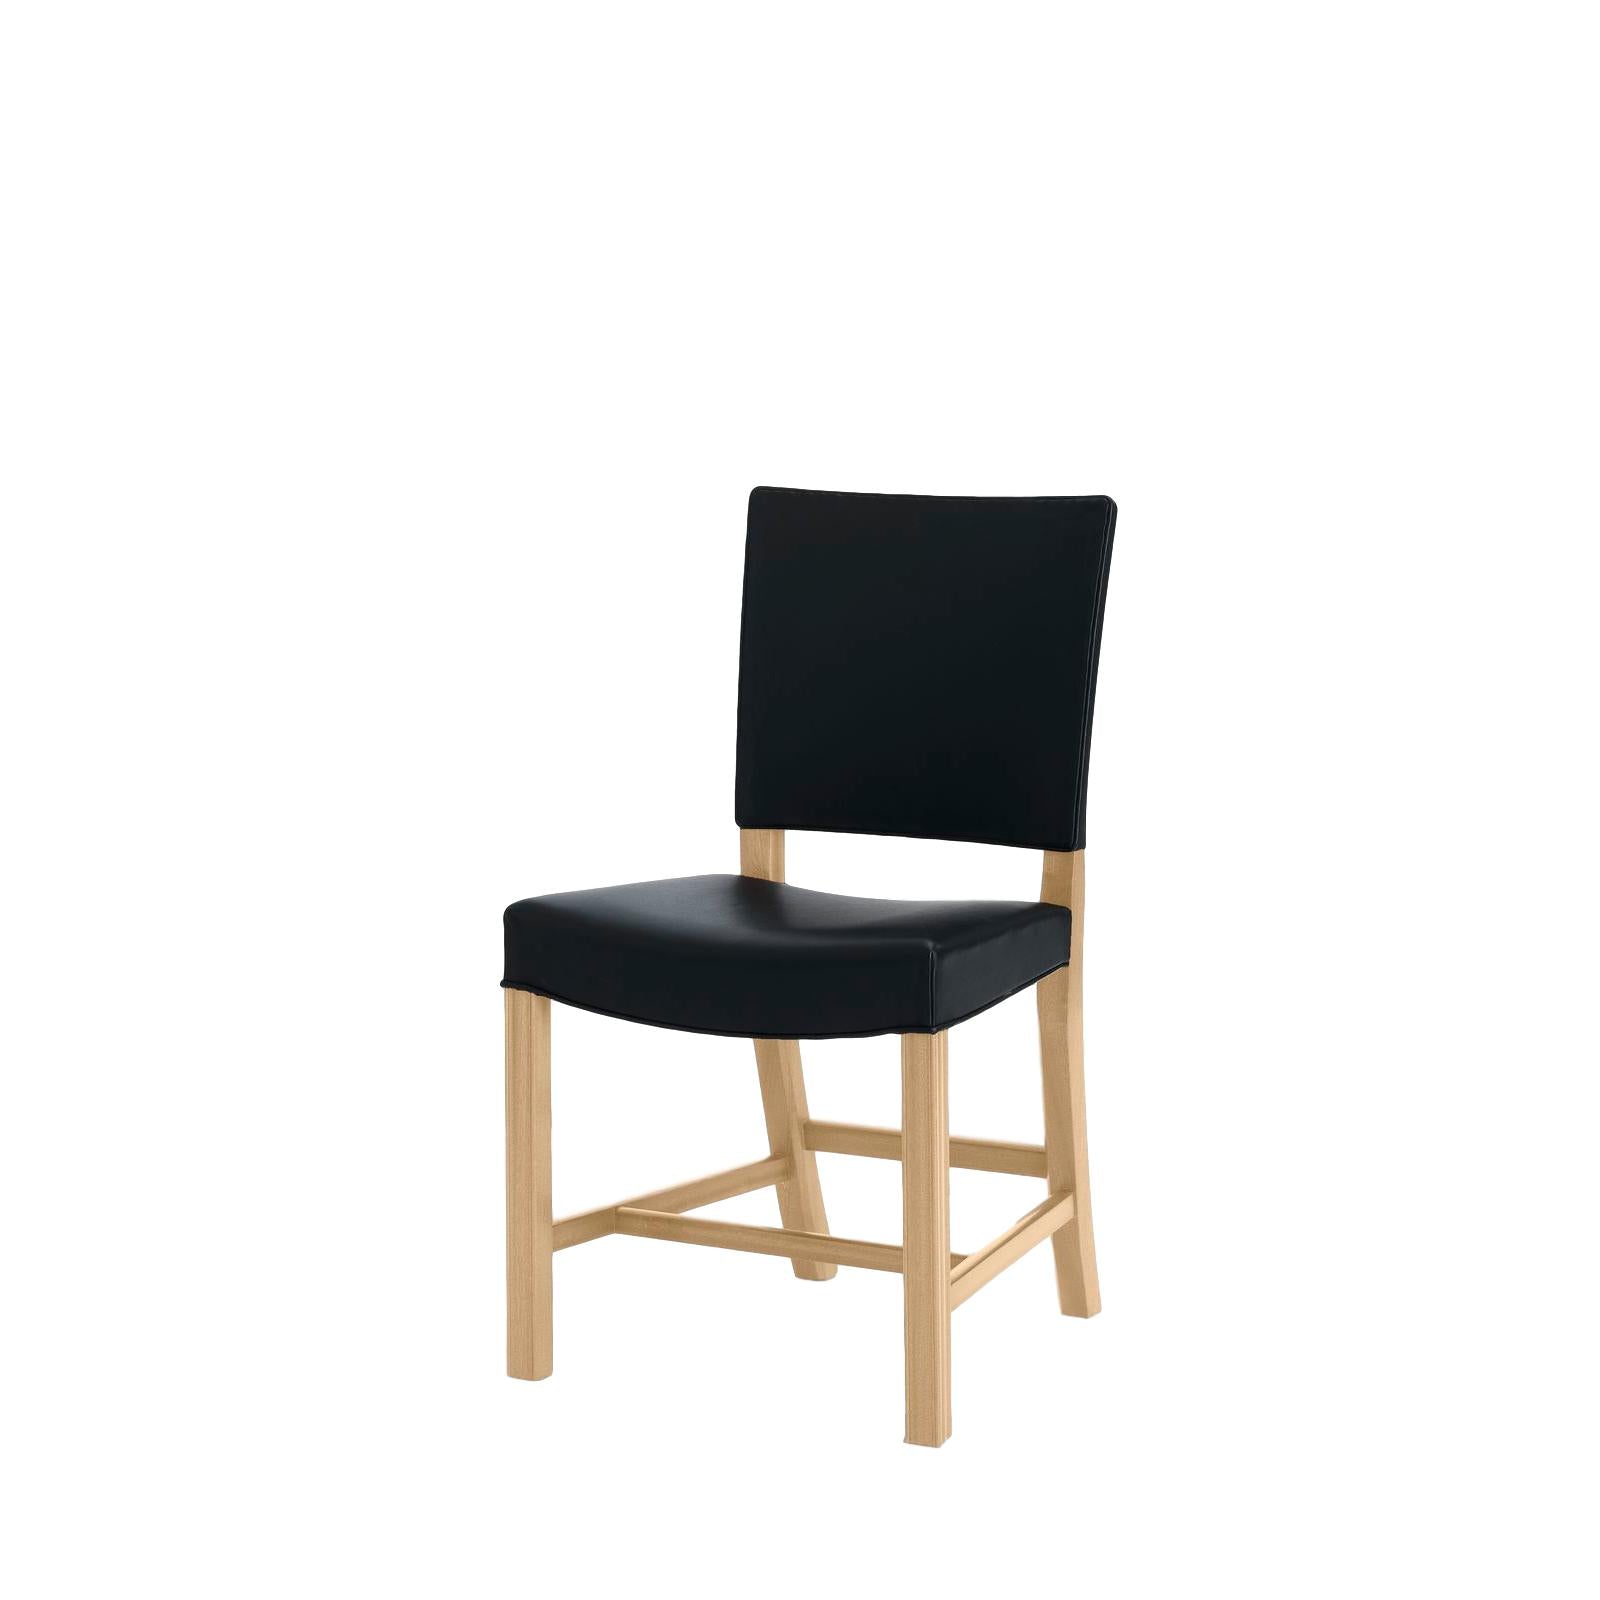 Carl Hansen KK37580 Velká červená židle, mýdlová dub/černá kůže